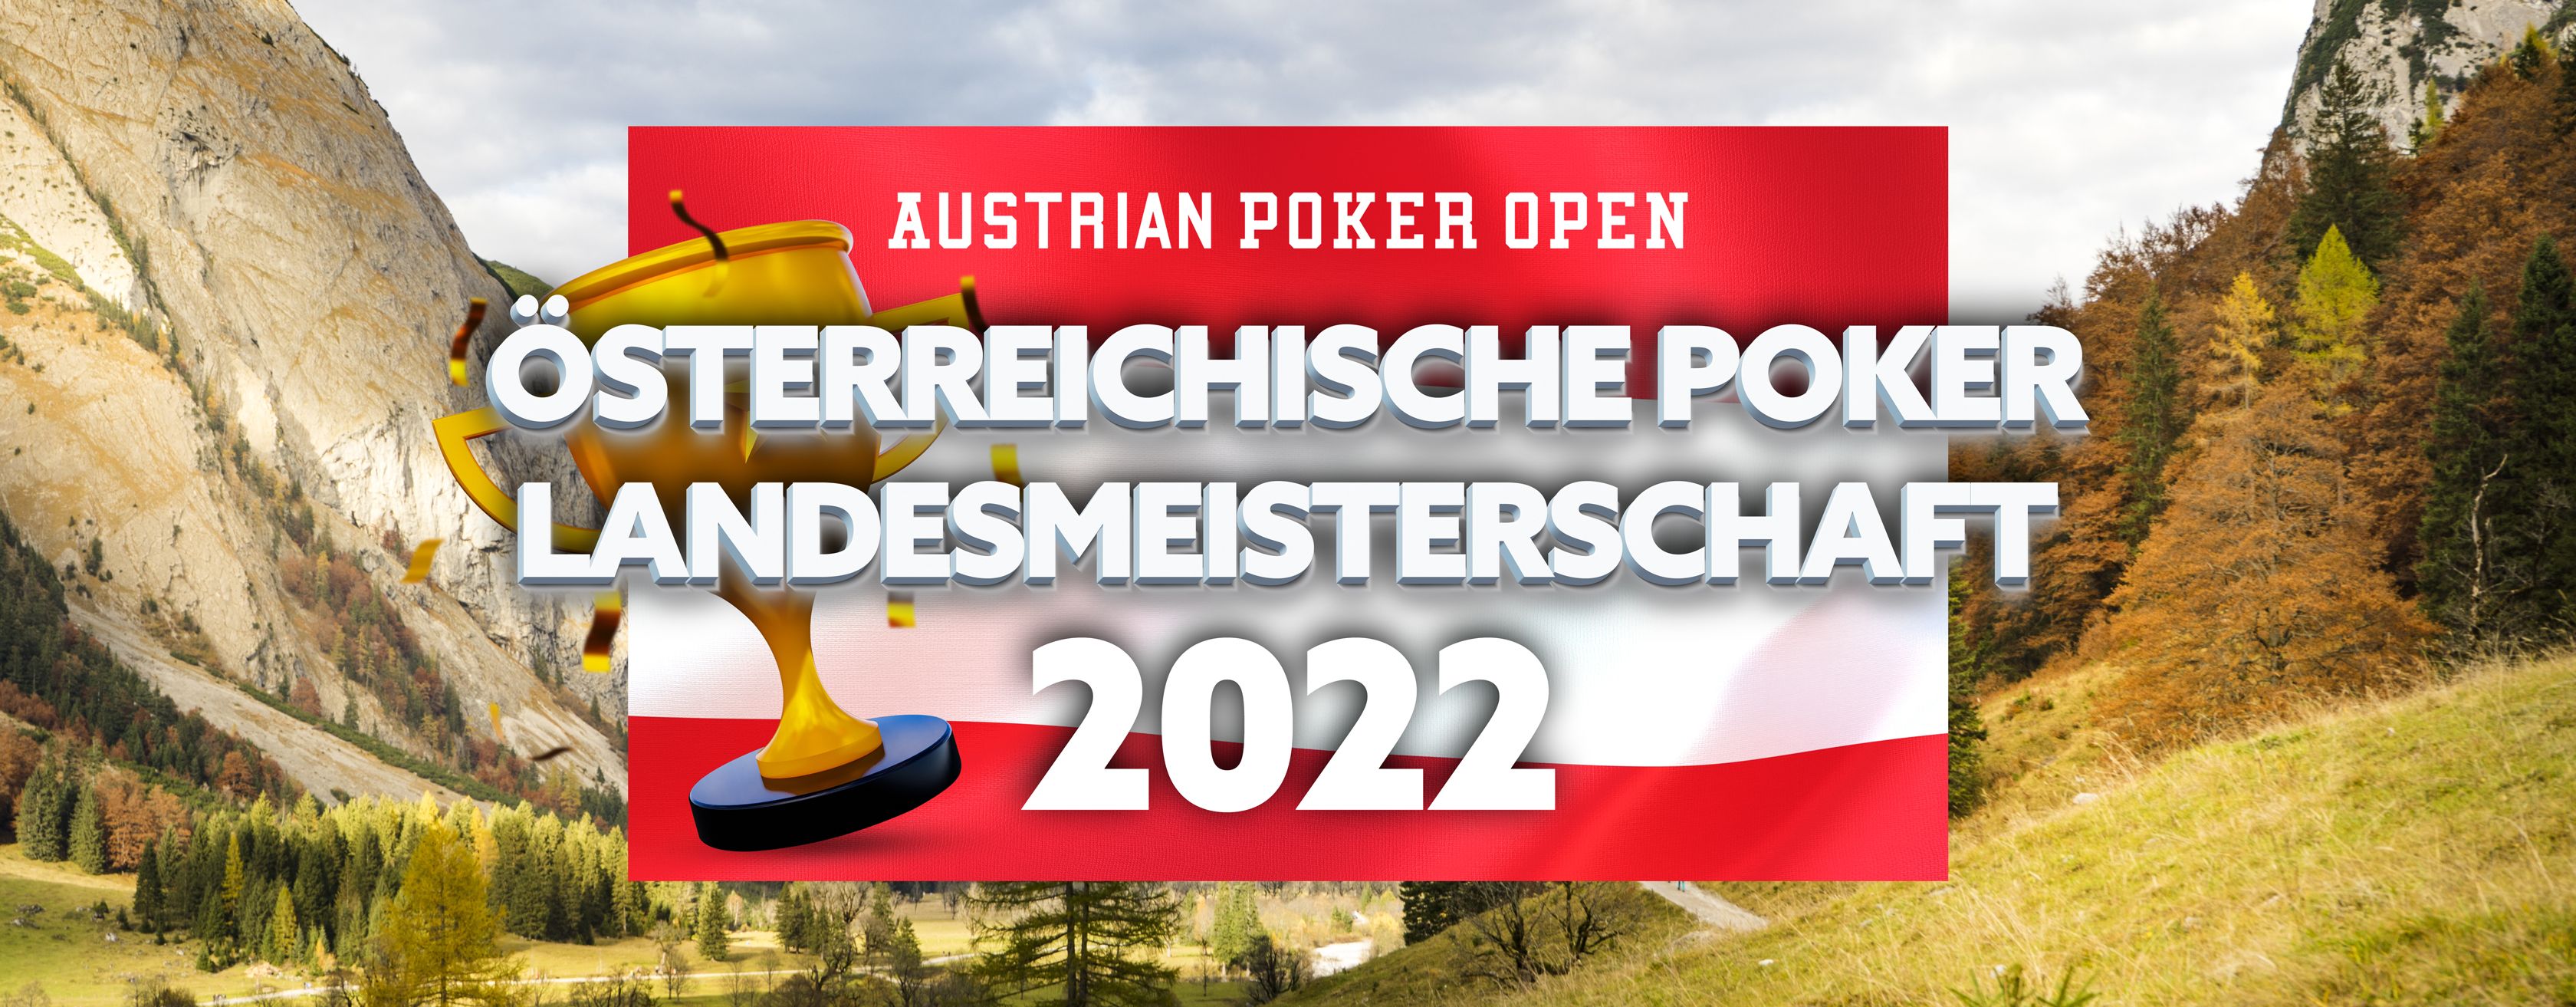 Österreichische Poker Landesmeisterschaft Tirol